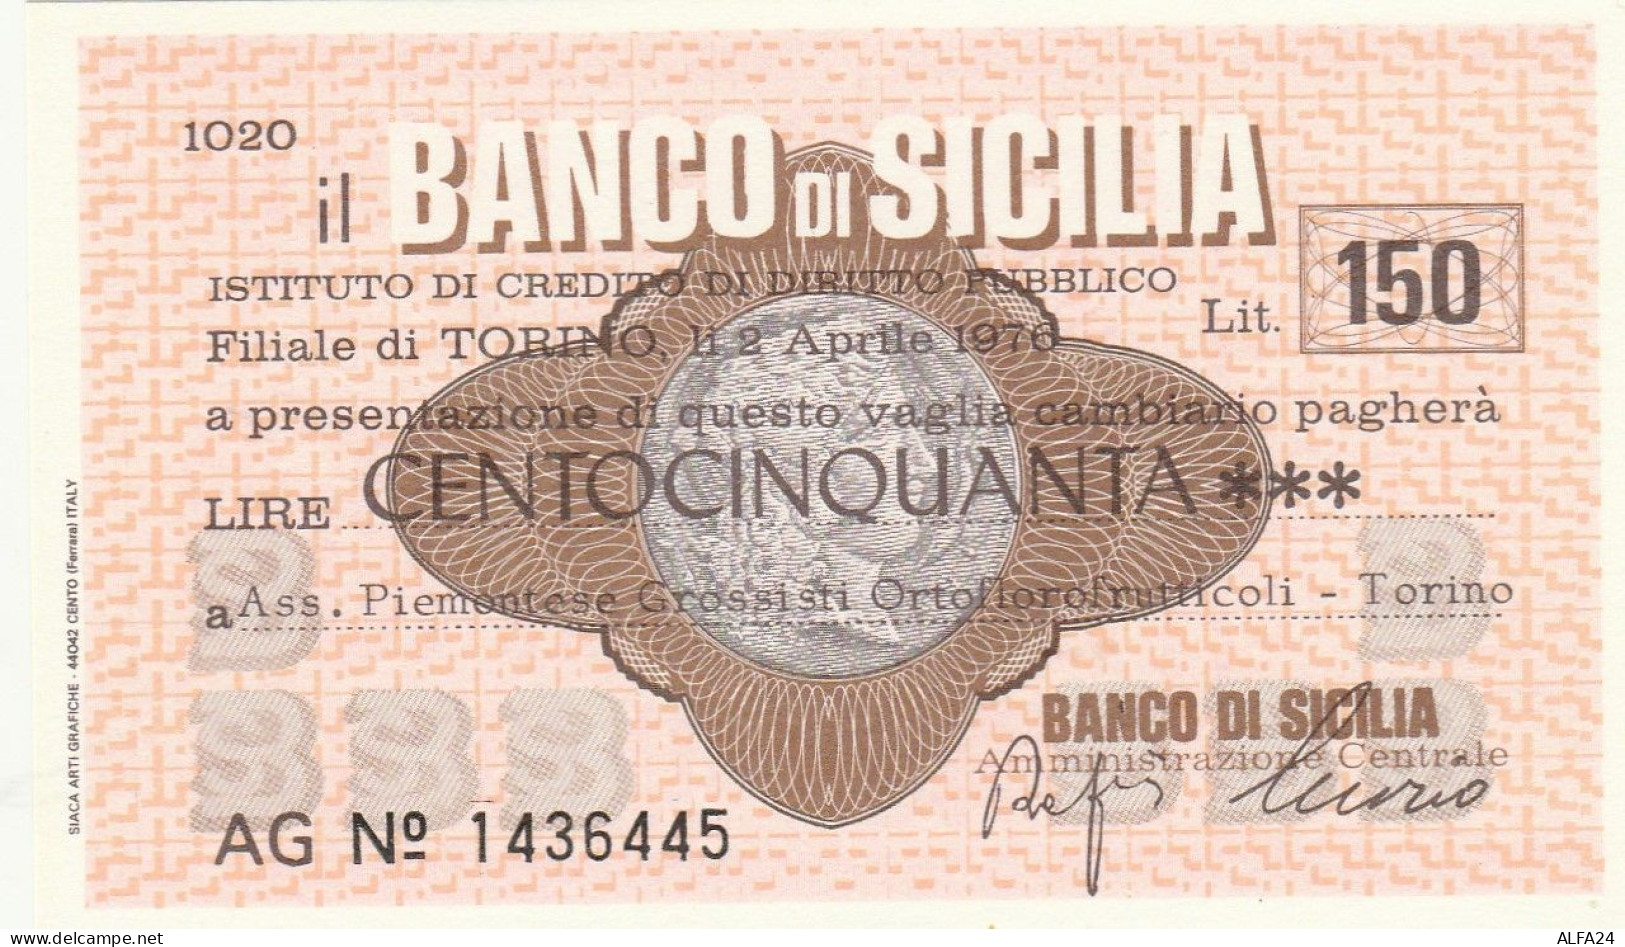 MINIASSEGNO BANCO DI SICILIA 150 L. ASS PIEMONTESE ORTOFLOROFRUT. (A338---FDS - [10] Checks And Mini-checks